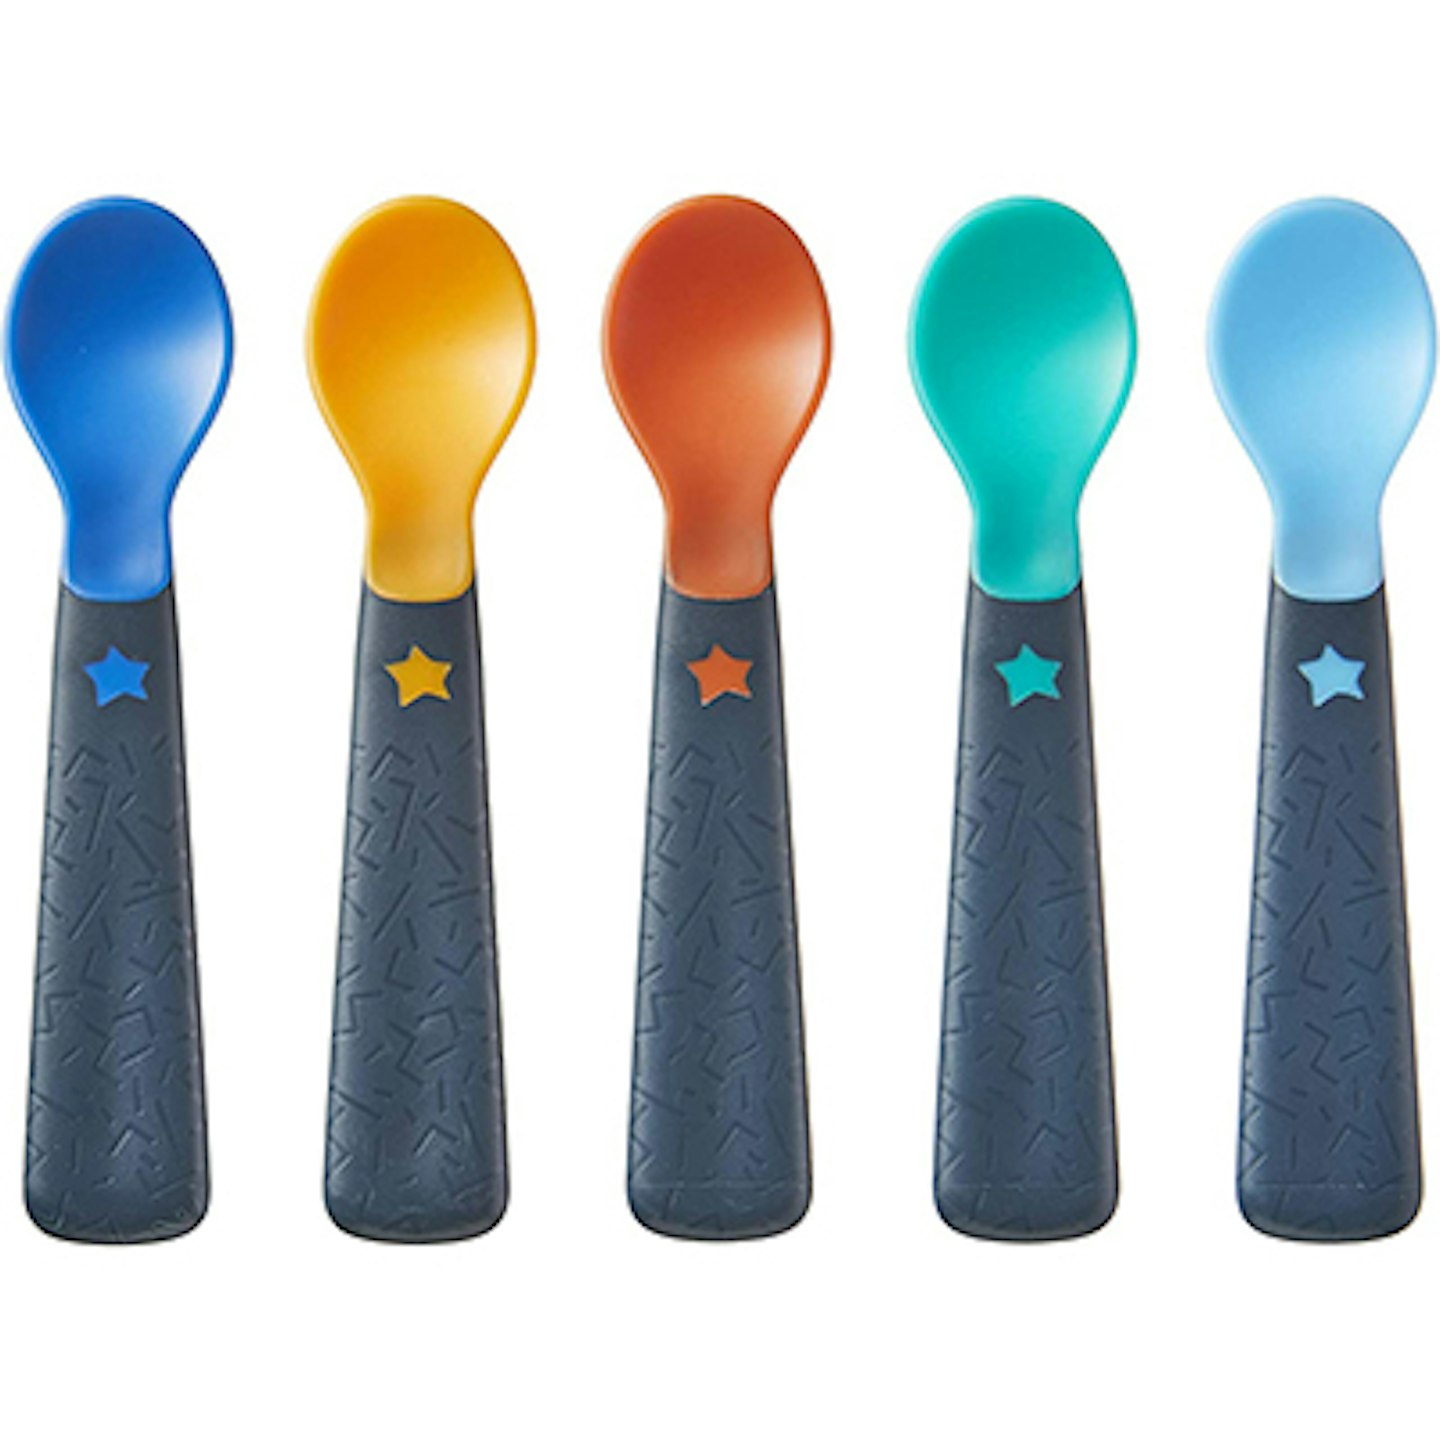 Tommee Tippee Easigrip Self-Feeding Weaning Spoons